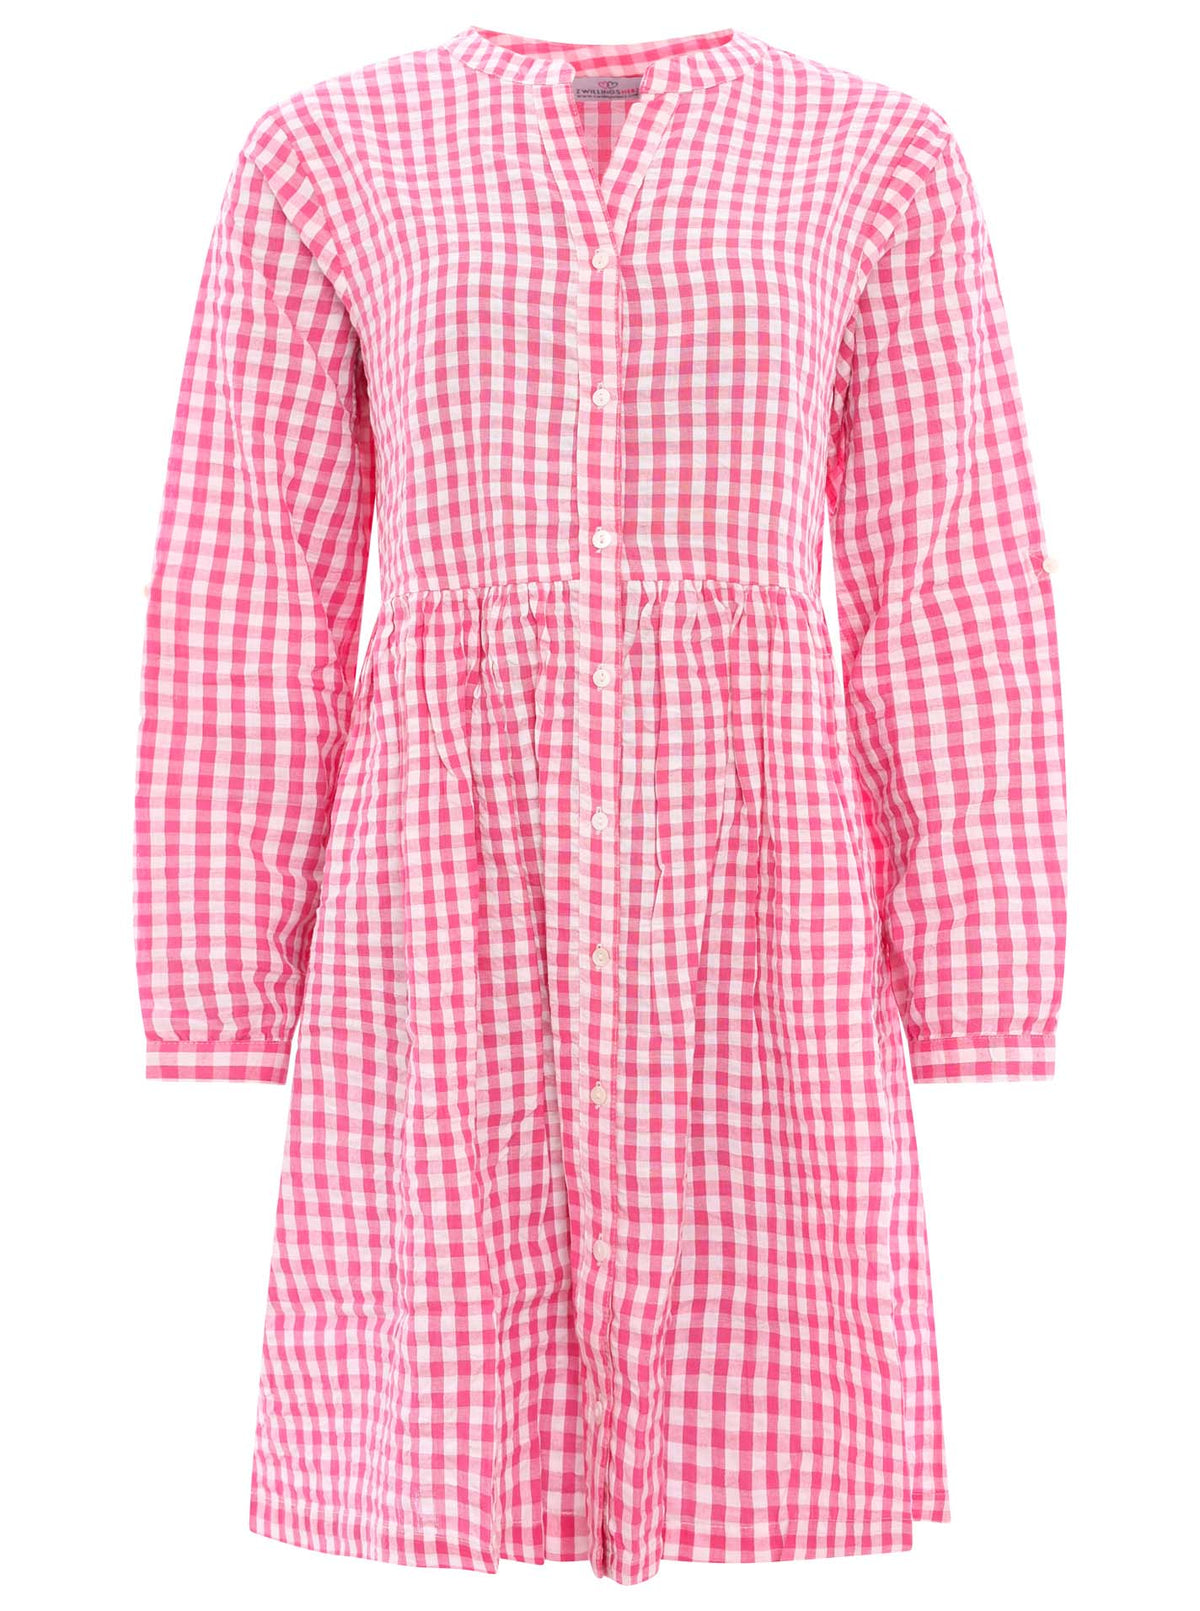 Zwillingsherz - Baumwoll Kleid - Pink/Weiß